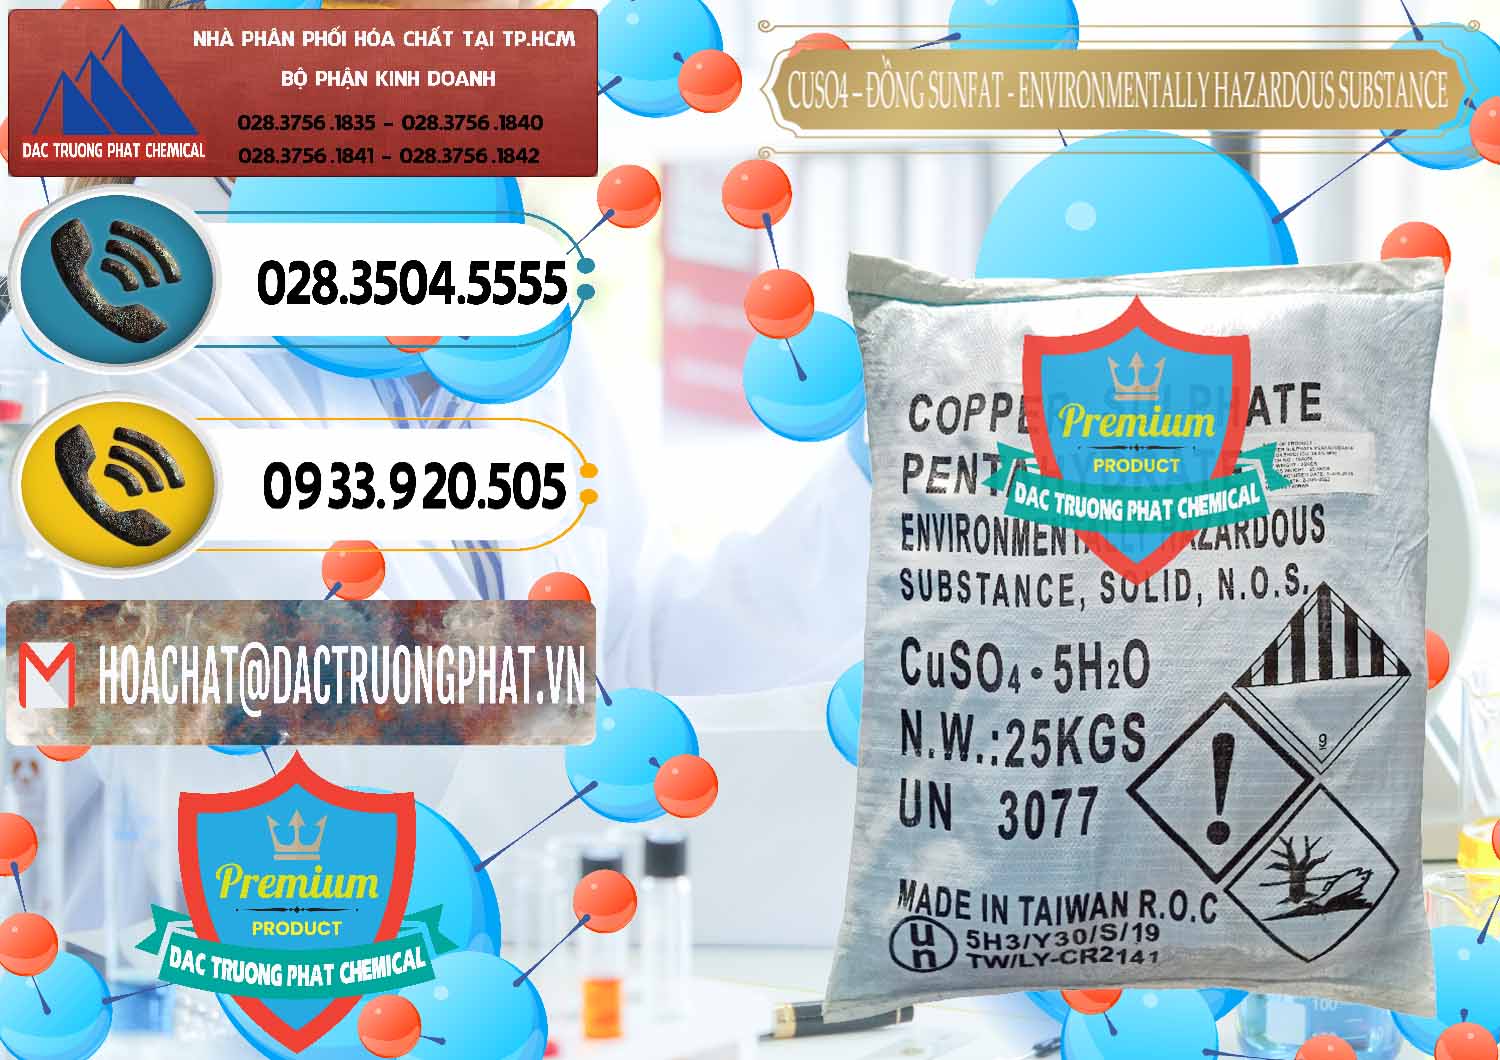 Nơi chuyên cung ứng và bán CuSO4 – Đồng Sunfat Đài Loan Taiwan - 0059 - Nơi chuyên phân phối & cung ứng hóa chất tại TP.HCM - hoachatdetnhuom.vn